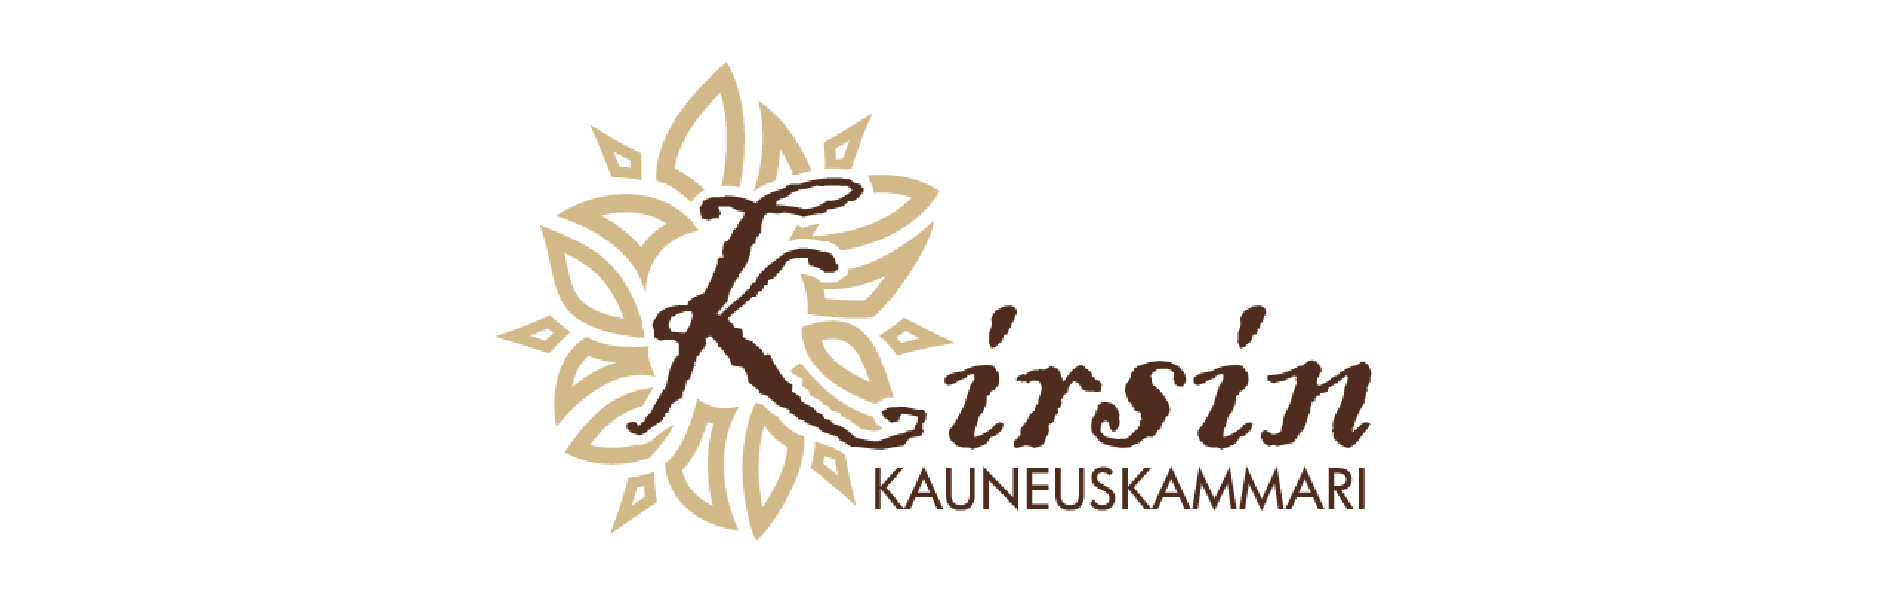 Otsakekuva_Kirsin_Kauneuskammarin_logo: tyylitelty kukkakranssi K-kirjaimen ympärillä, tekstinä: Kirsin Kauneuskammari